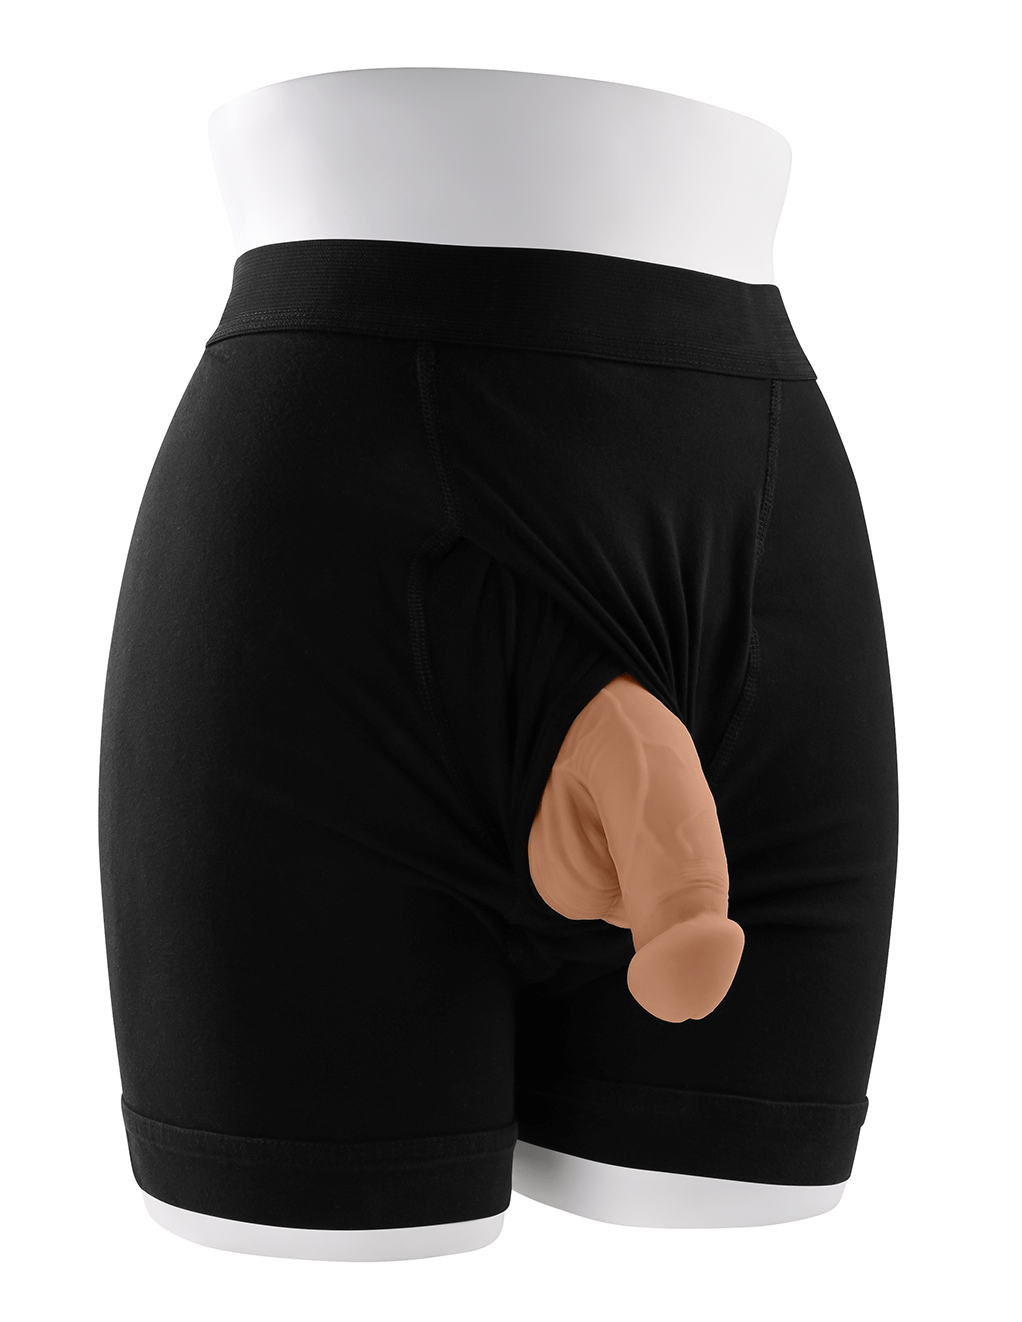 Gender X 4" Packer - Caramel - Underwear Display